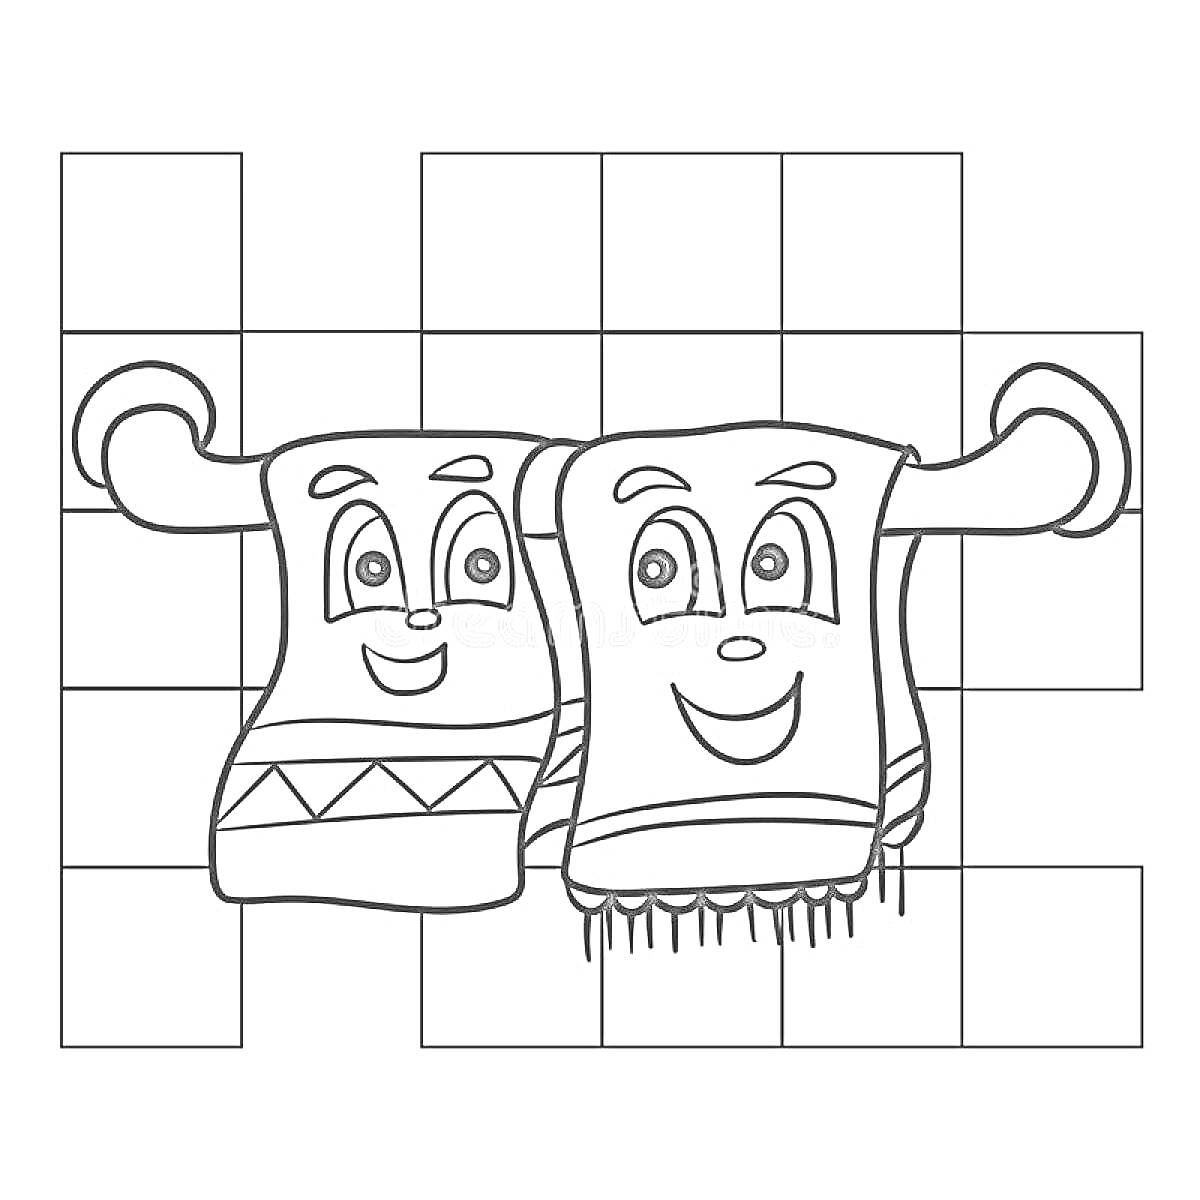 Два полотенца с лицами на вешалке, плиточный фон